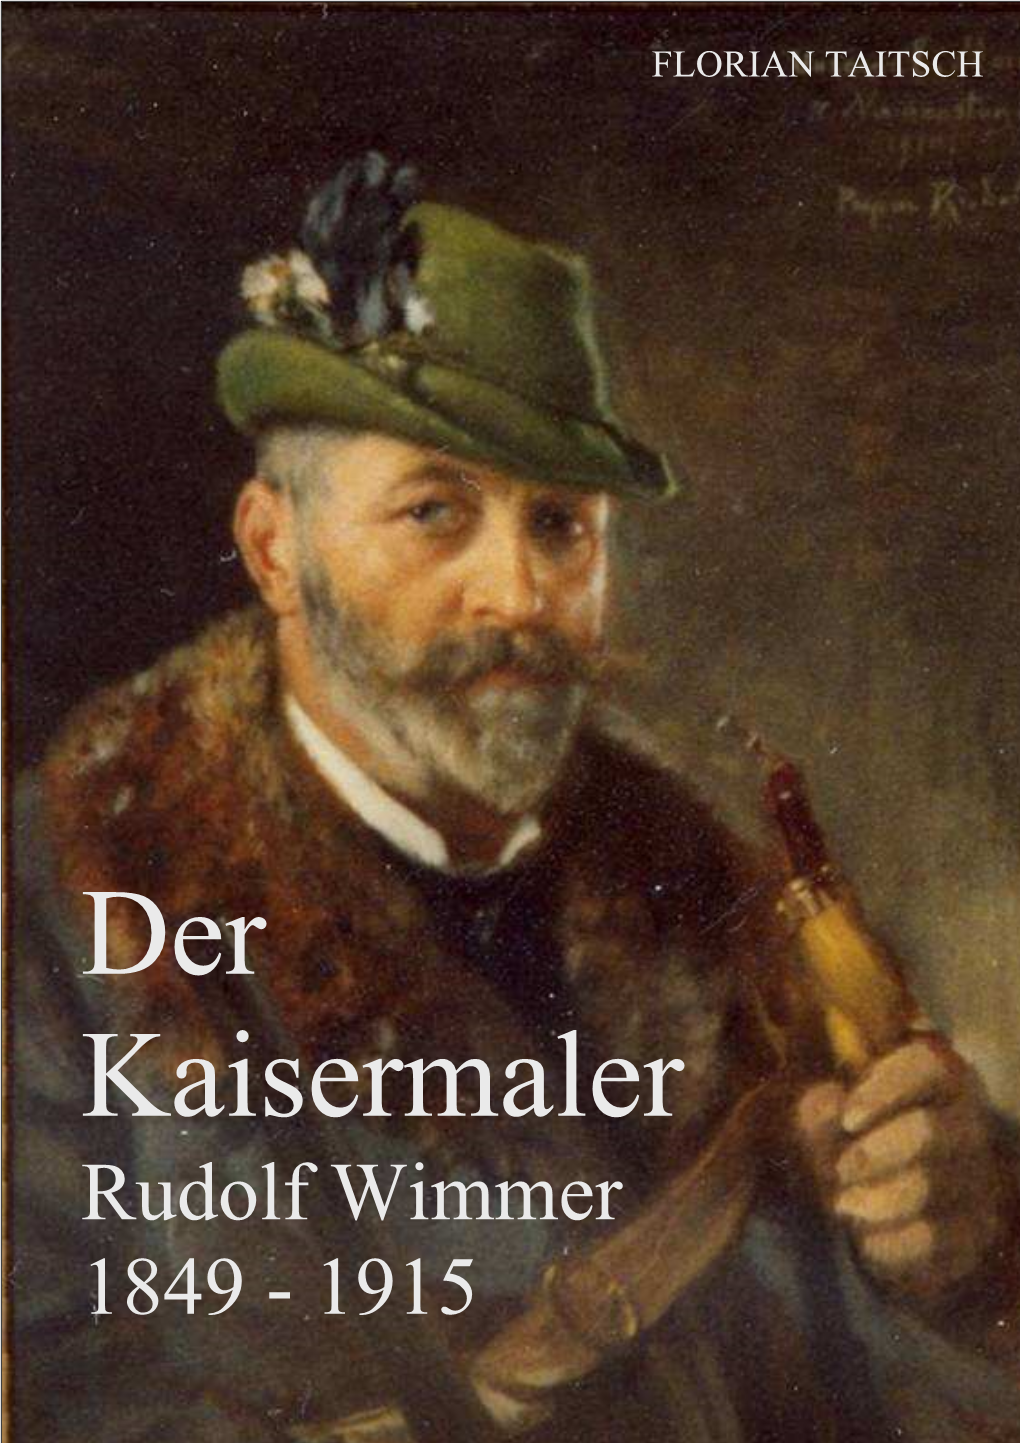 Rudolf Wimmer 1849 - 1915